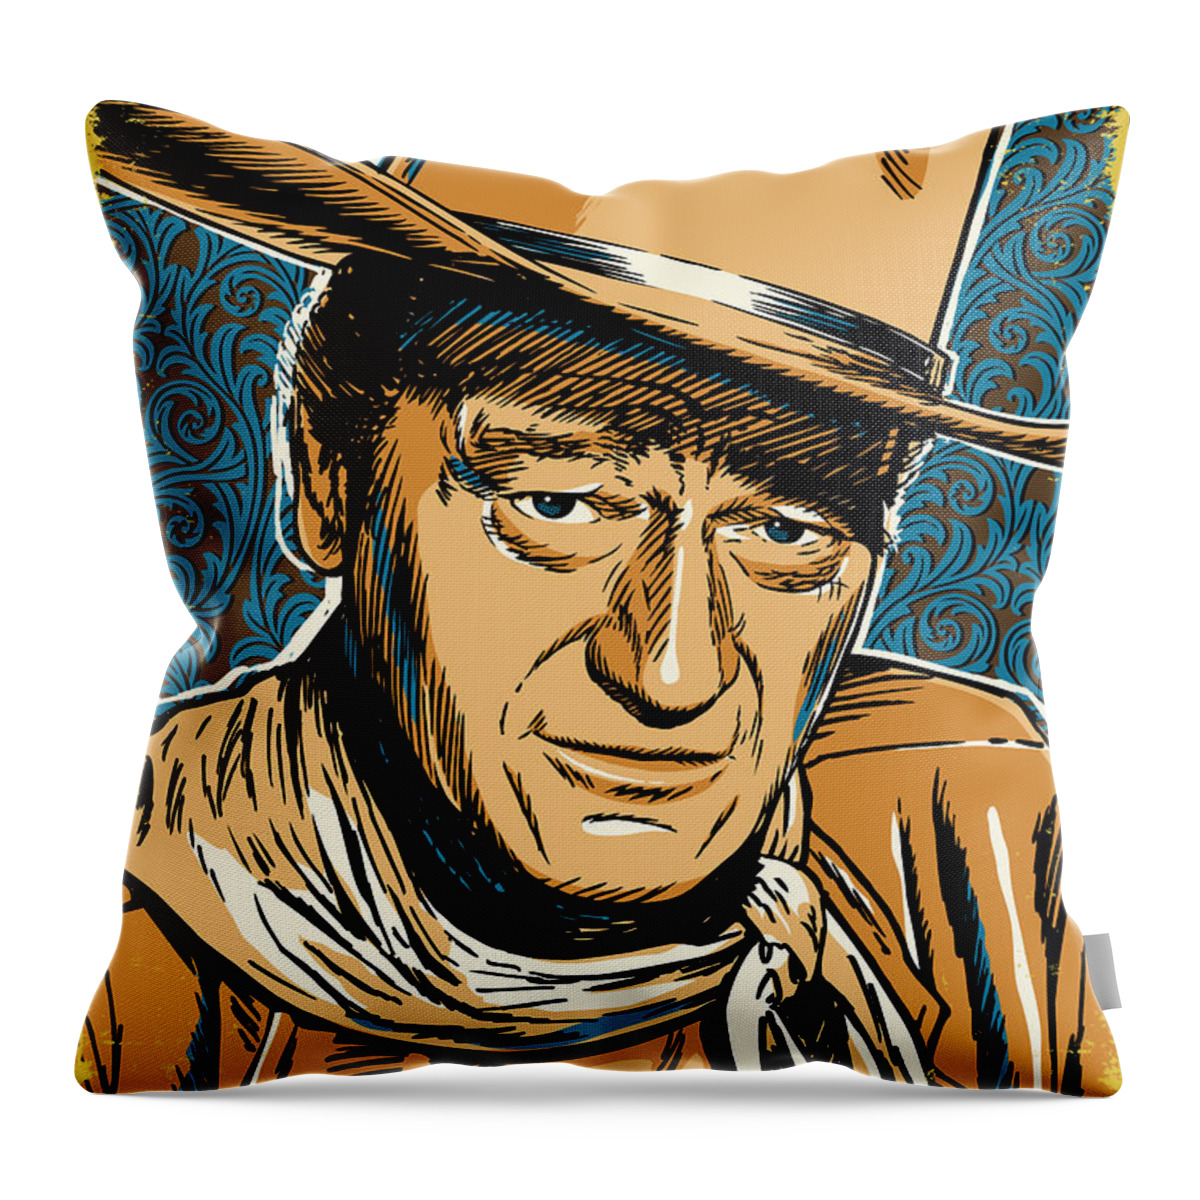 Western Throw Pillow featuring the digital art John Wayne Pop Art by Jim Zahniser